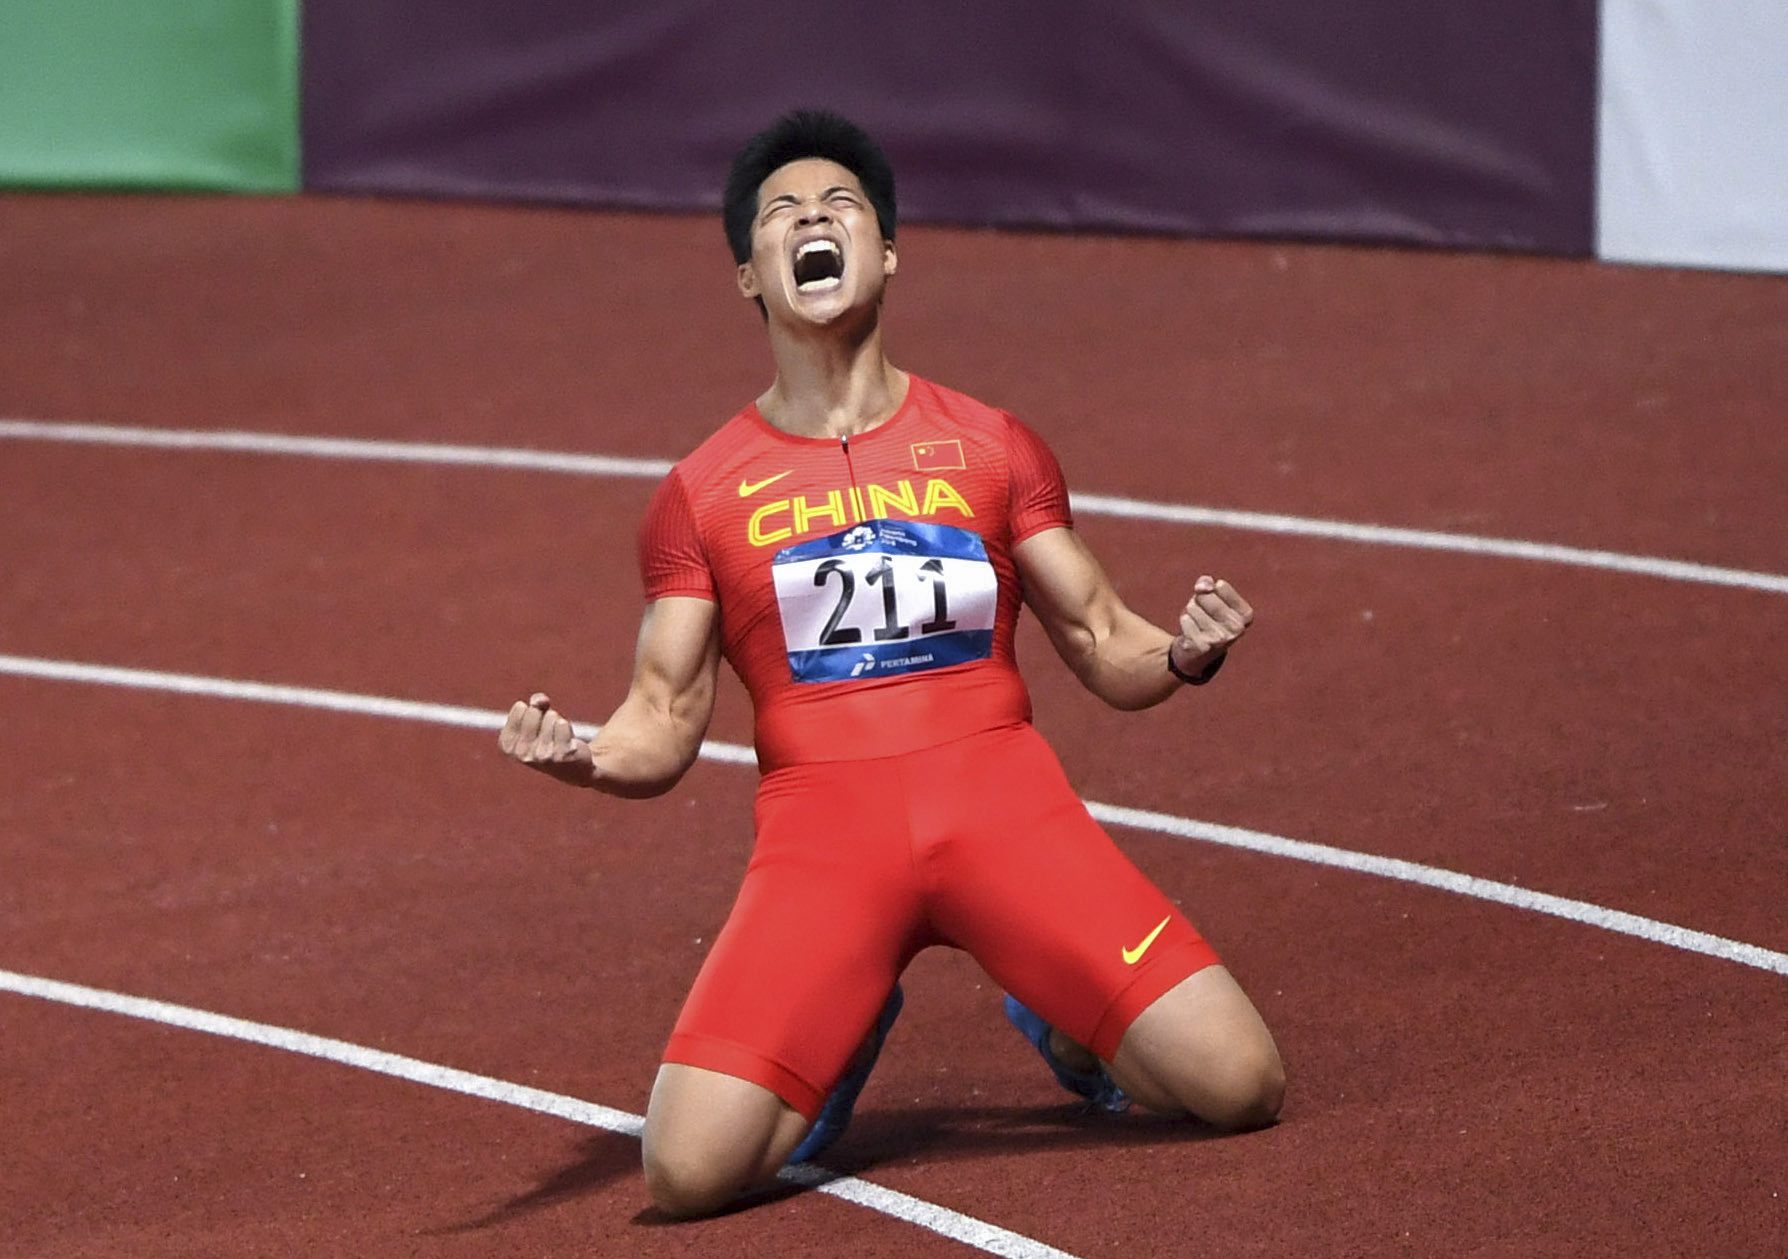 在雅加达亚运会田径男子100米决赛中,中国选手苏炳添以9秒92的成绩